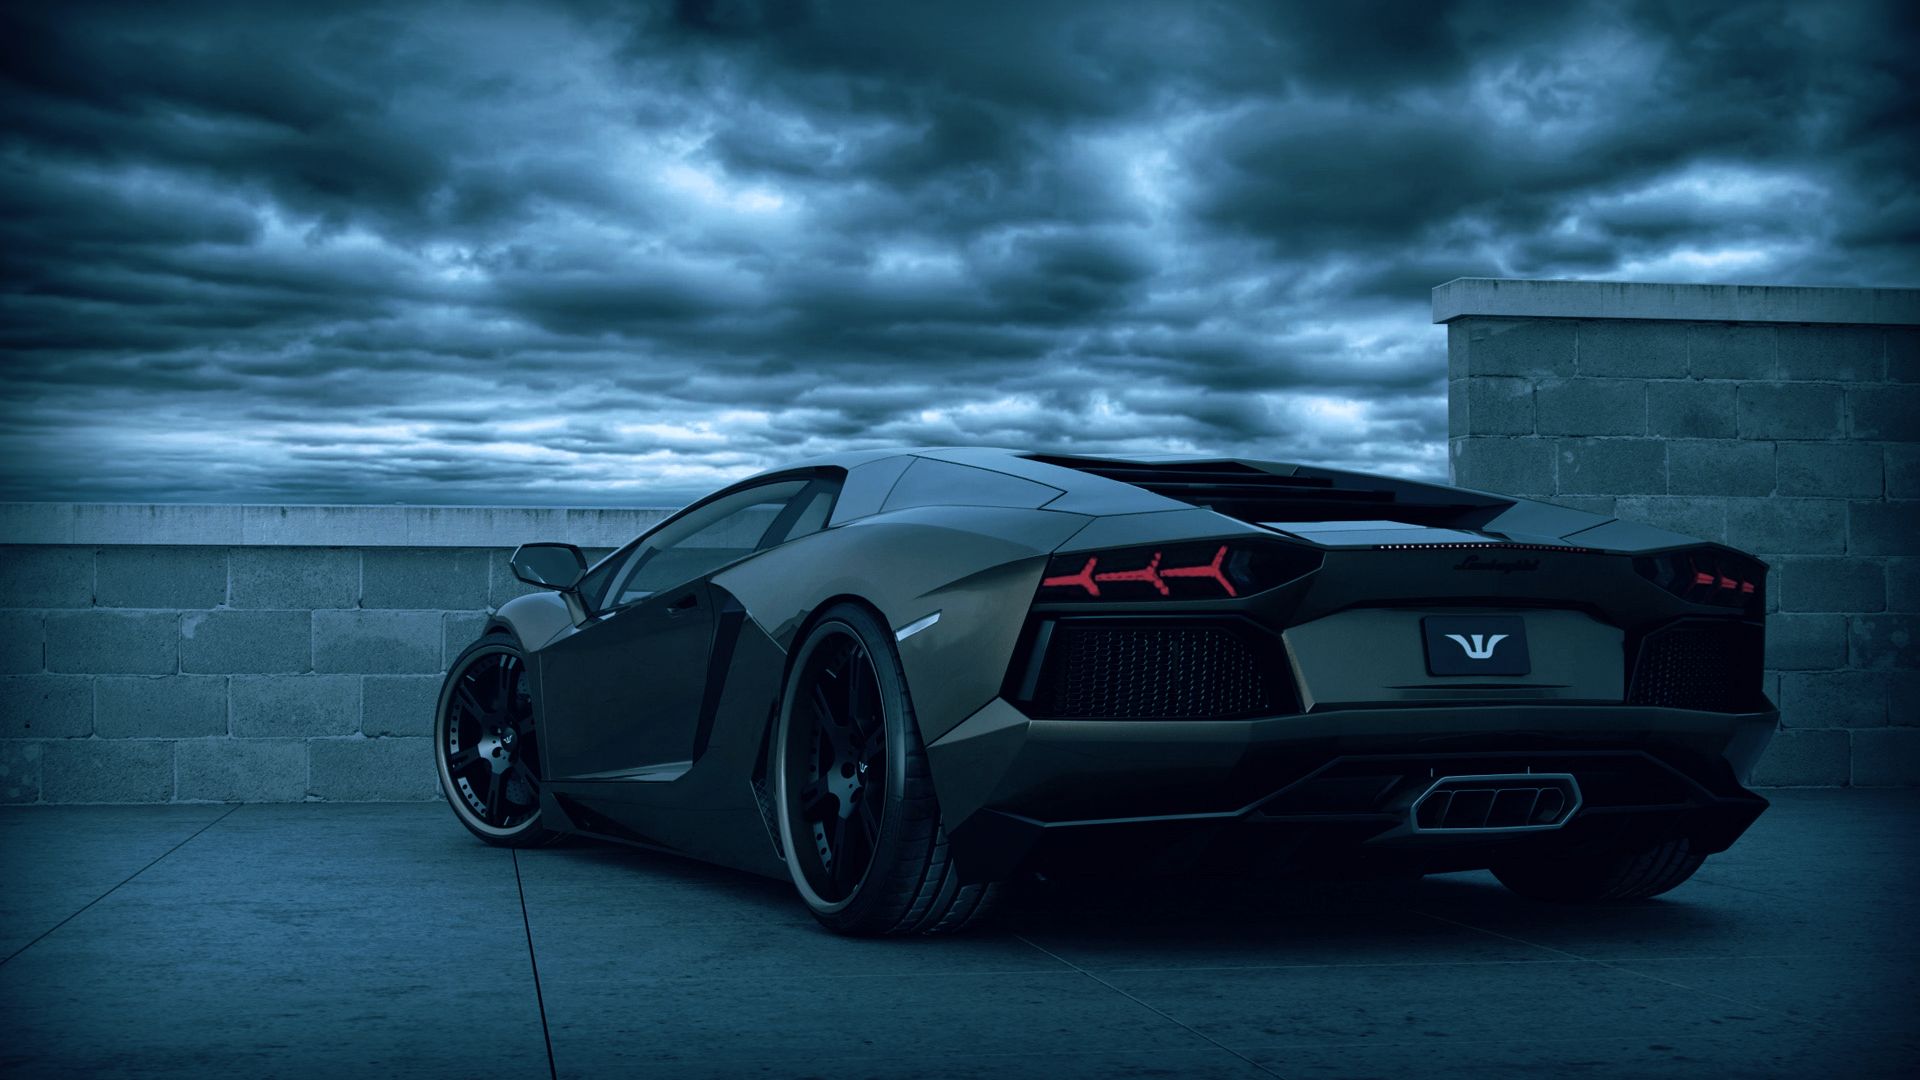 Lamborghini Full HD Wallpaper - Free Wallpapers for iPhone, Android, Desktop  & Phone